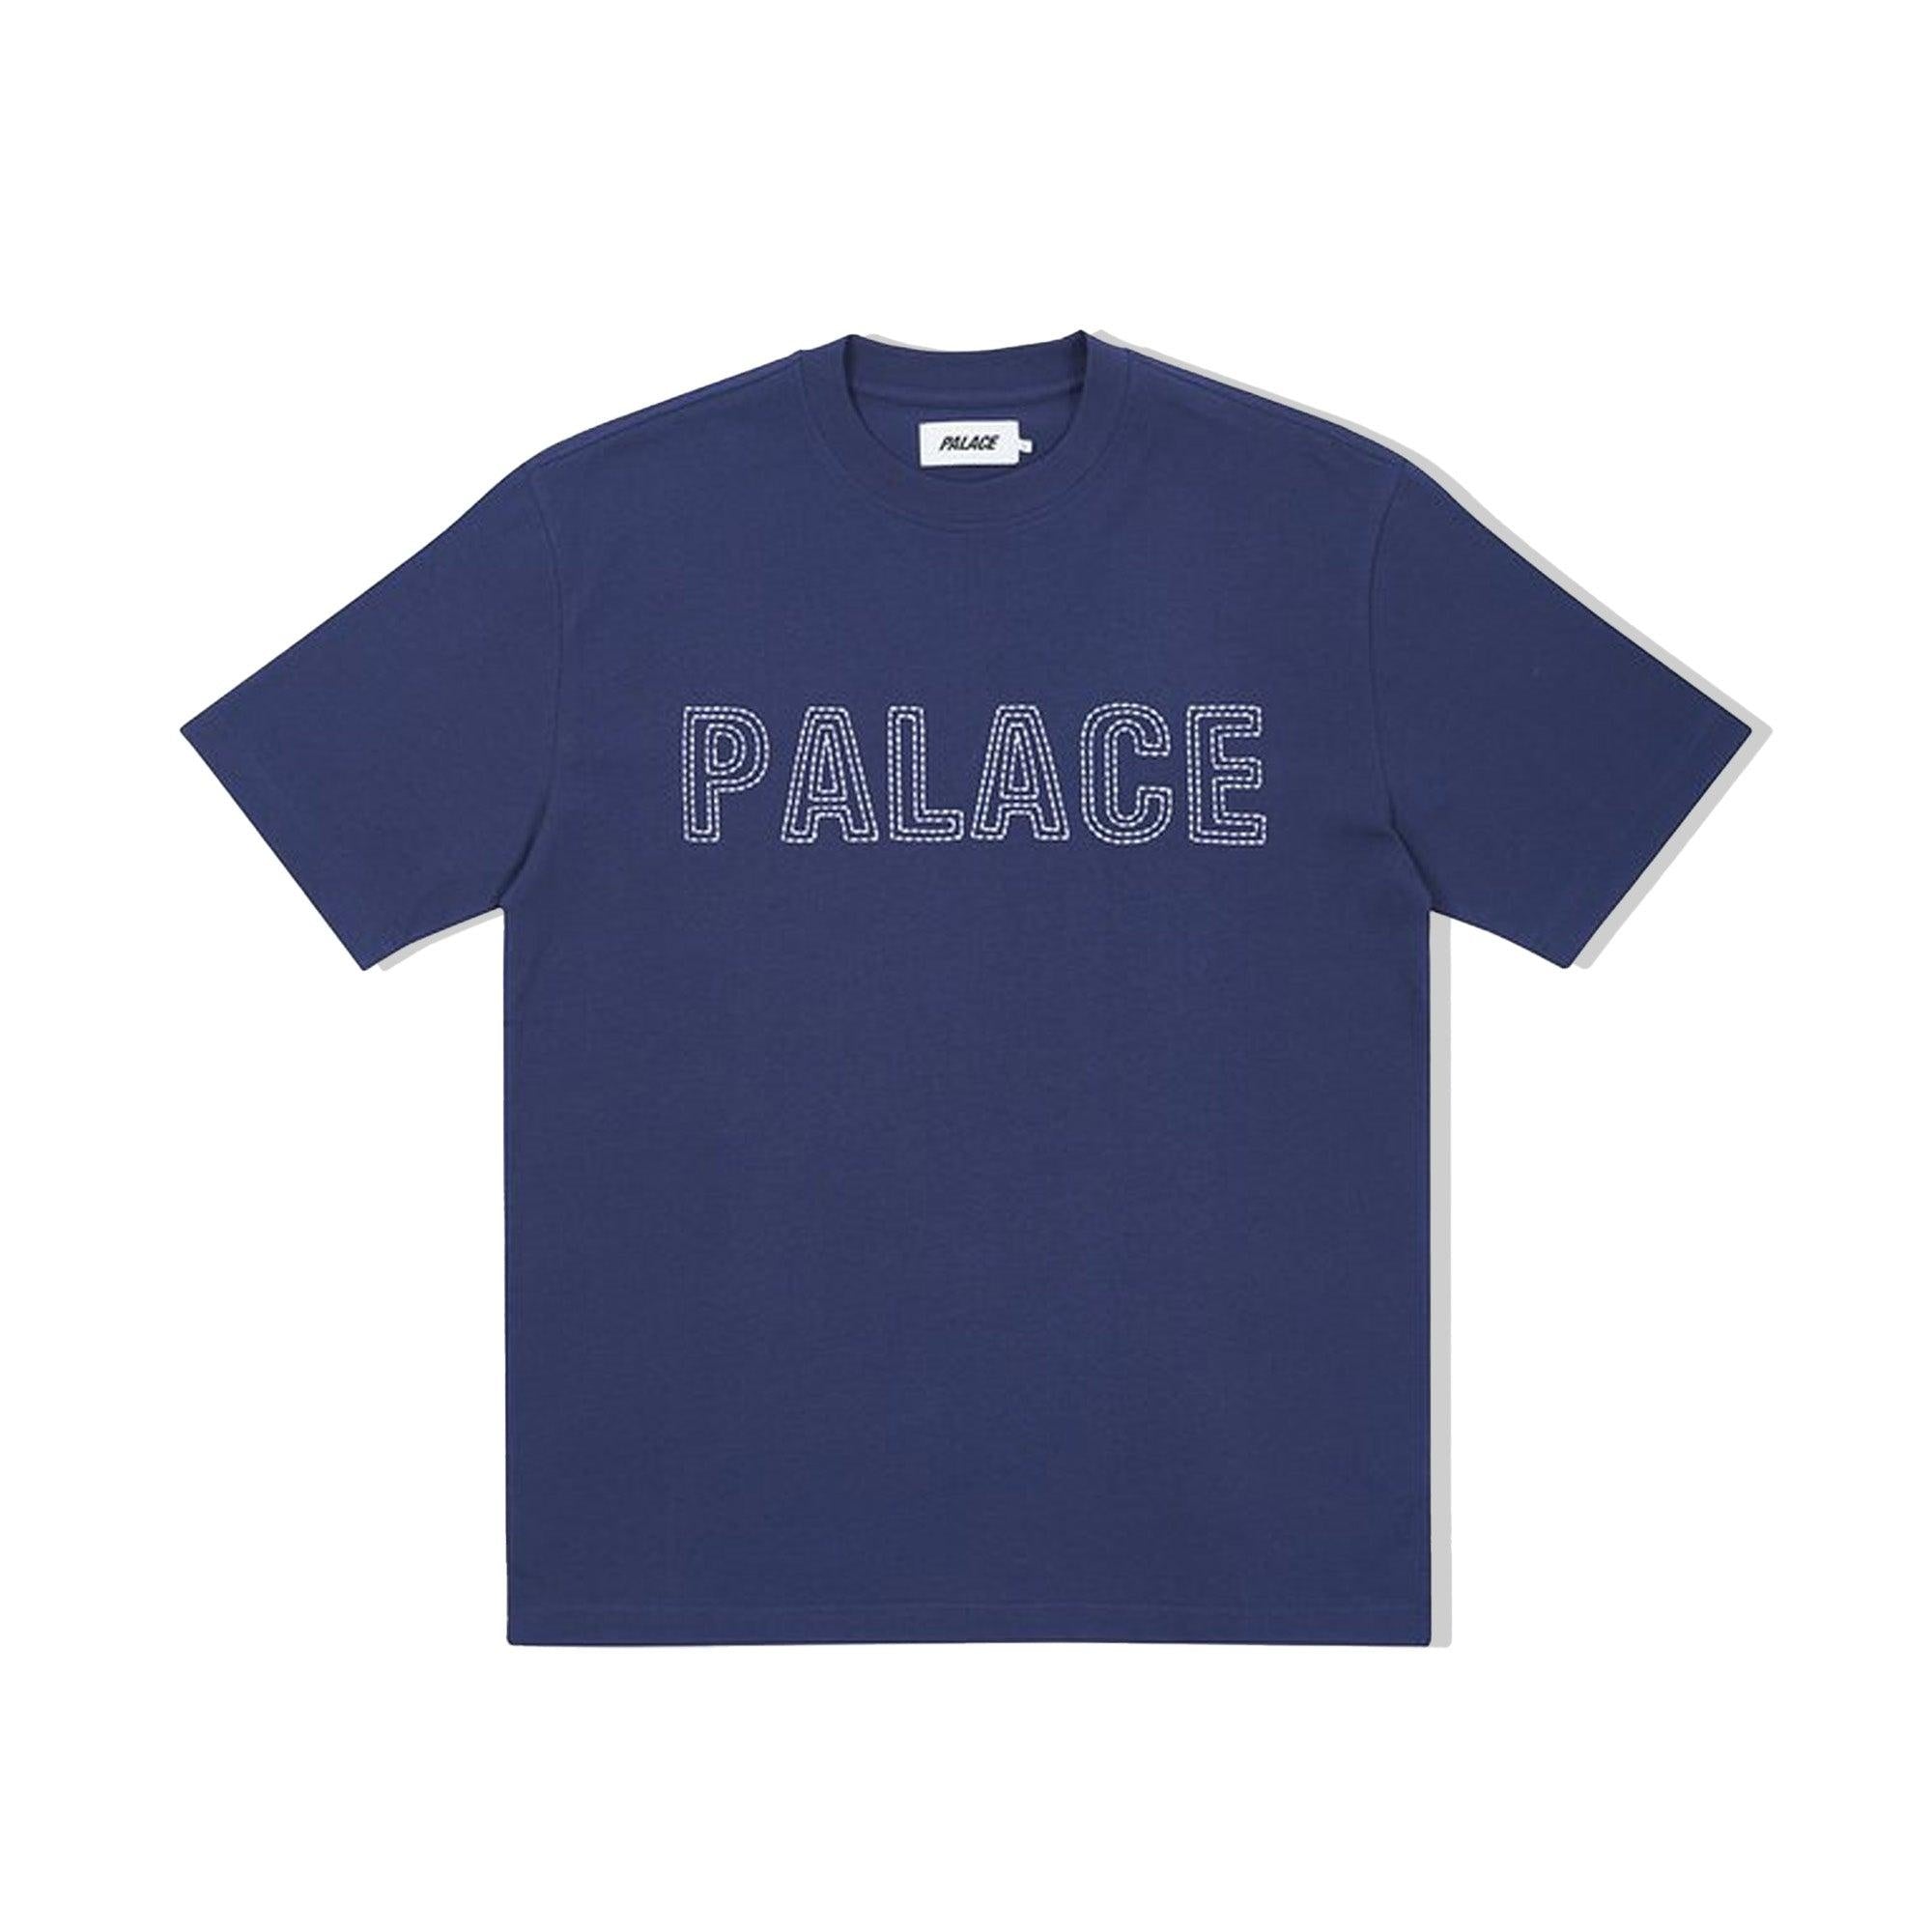 Buy Palace Palace Contrast Stitch Navy T-Shirt Online